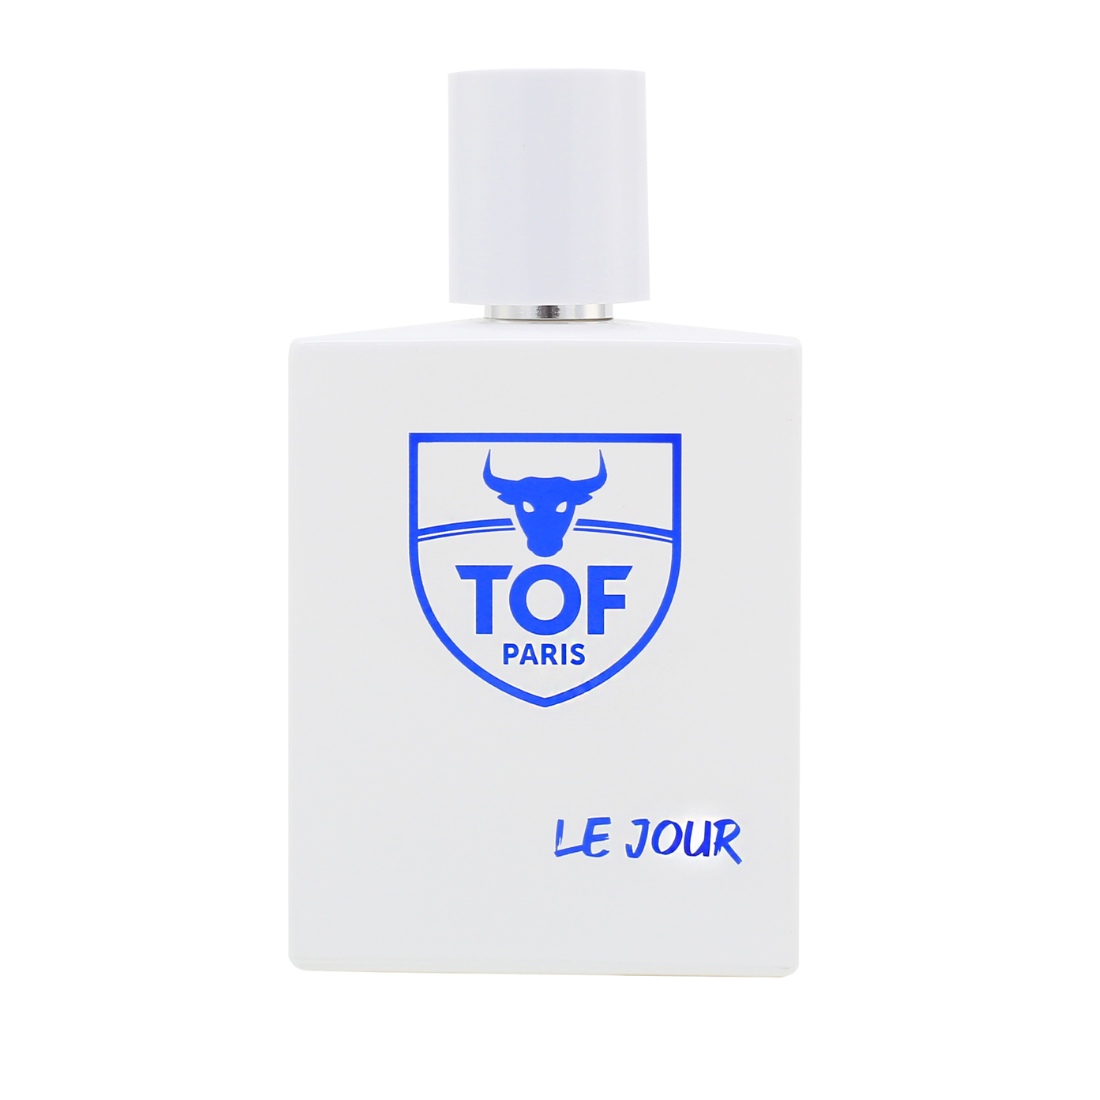 Fles Tof Paris - Eau de Parfum Le Jour 100 ml is te koop bij Flavourez.